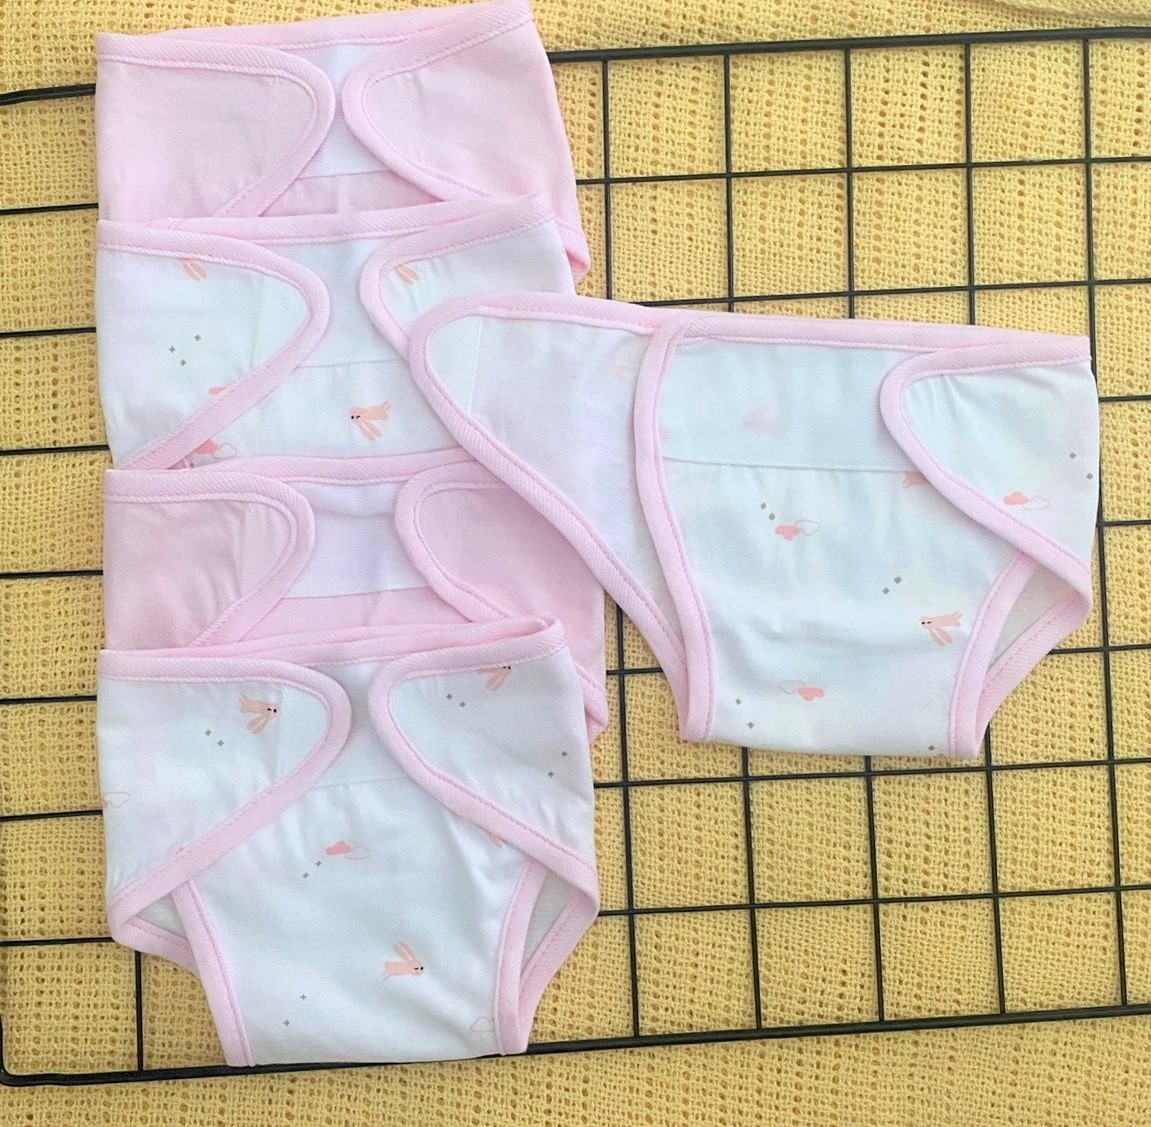 Set 10 Tã Vải Sơ Sinh cotton TOMTOM BABY | Size 1,2,3 cho bé sơ sinh -9kg | Chất vải cotton mềm, mịn, thoáng khí